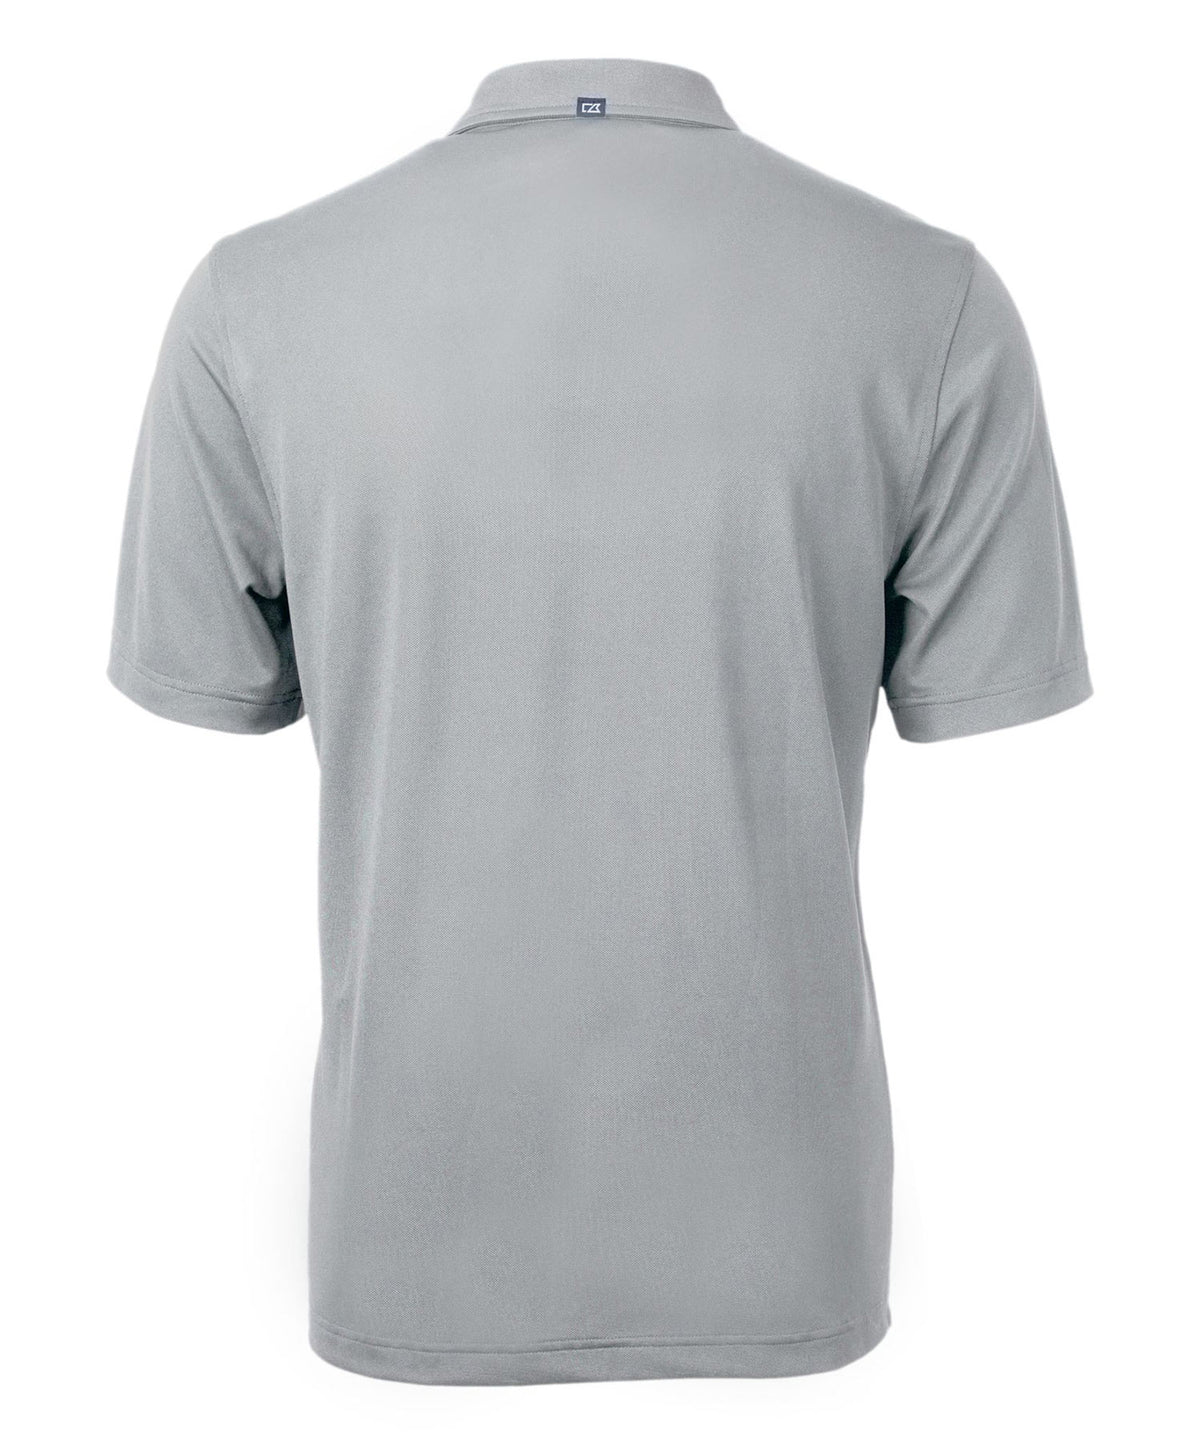 Cutter & Buck University of Kentucky Wildcats Short Sleeve Polo Knit Shirt, Men's Big & Tall